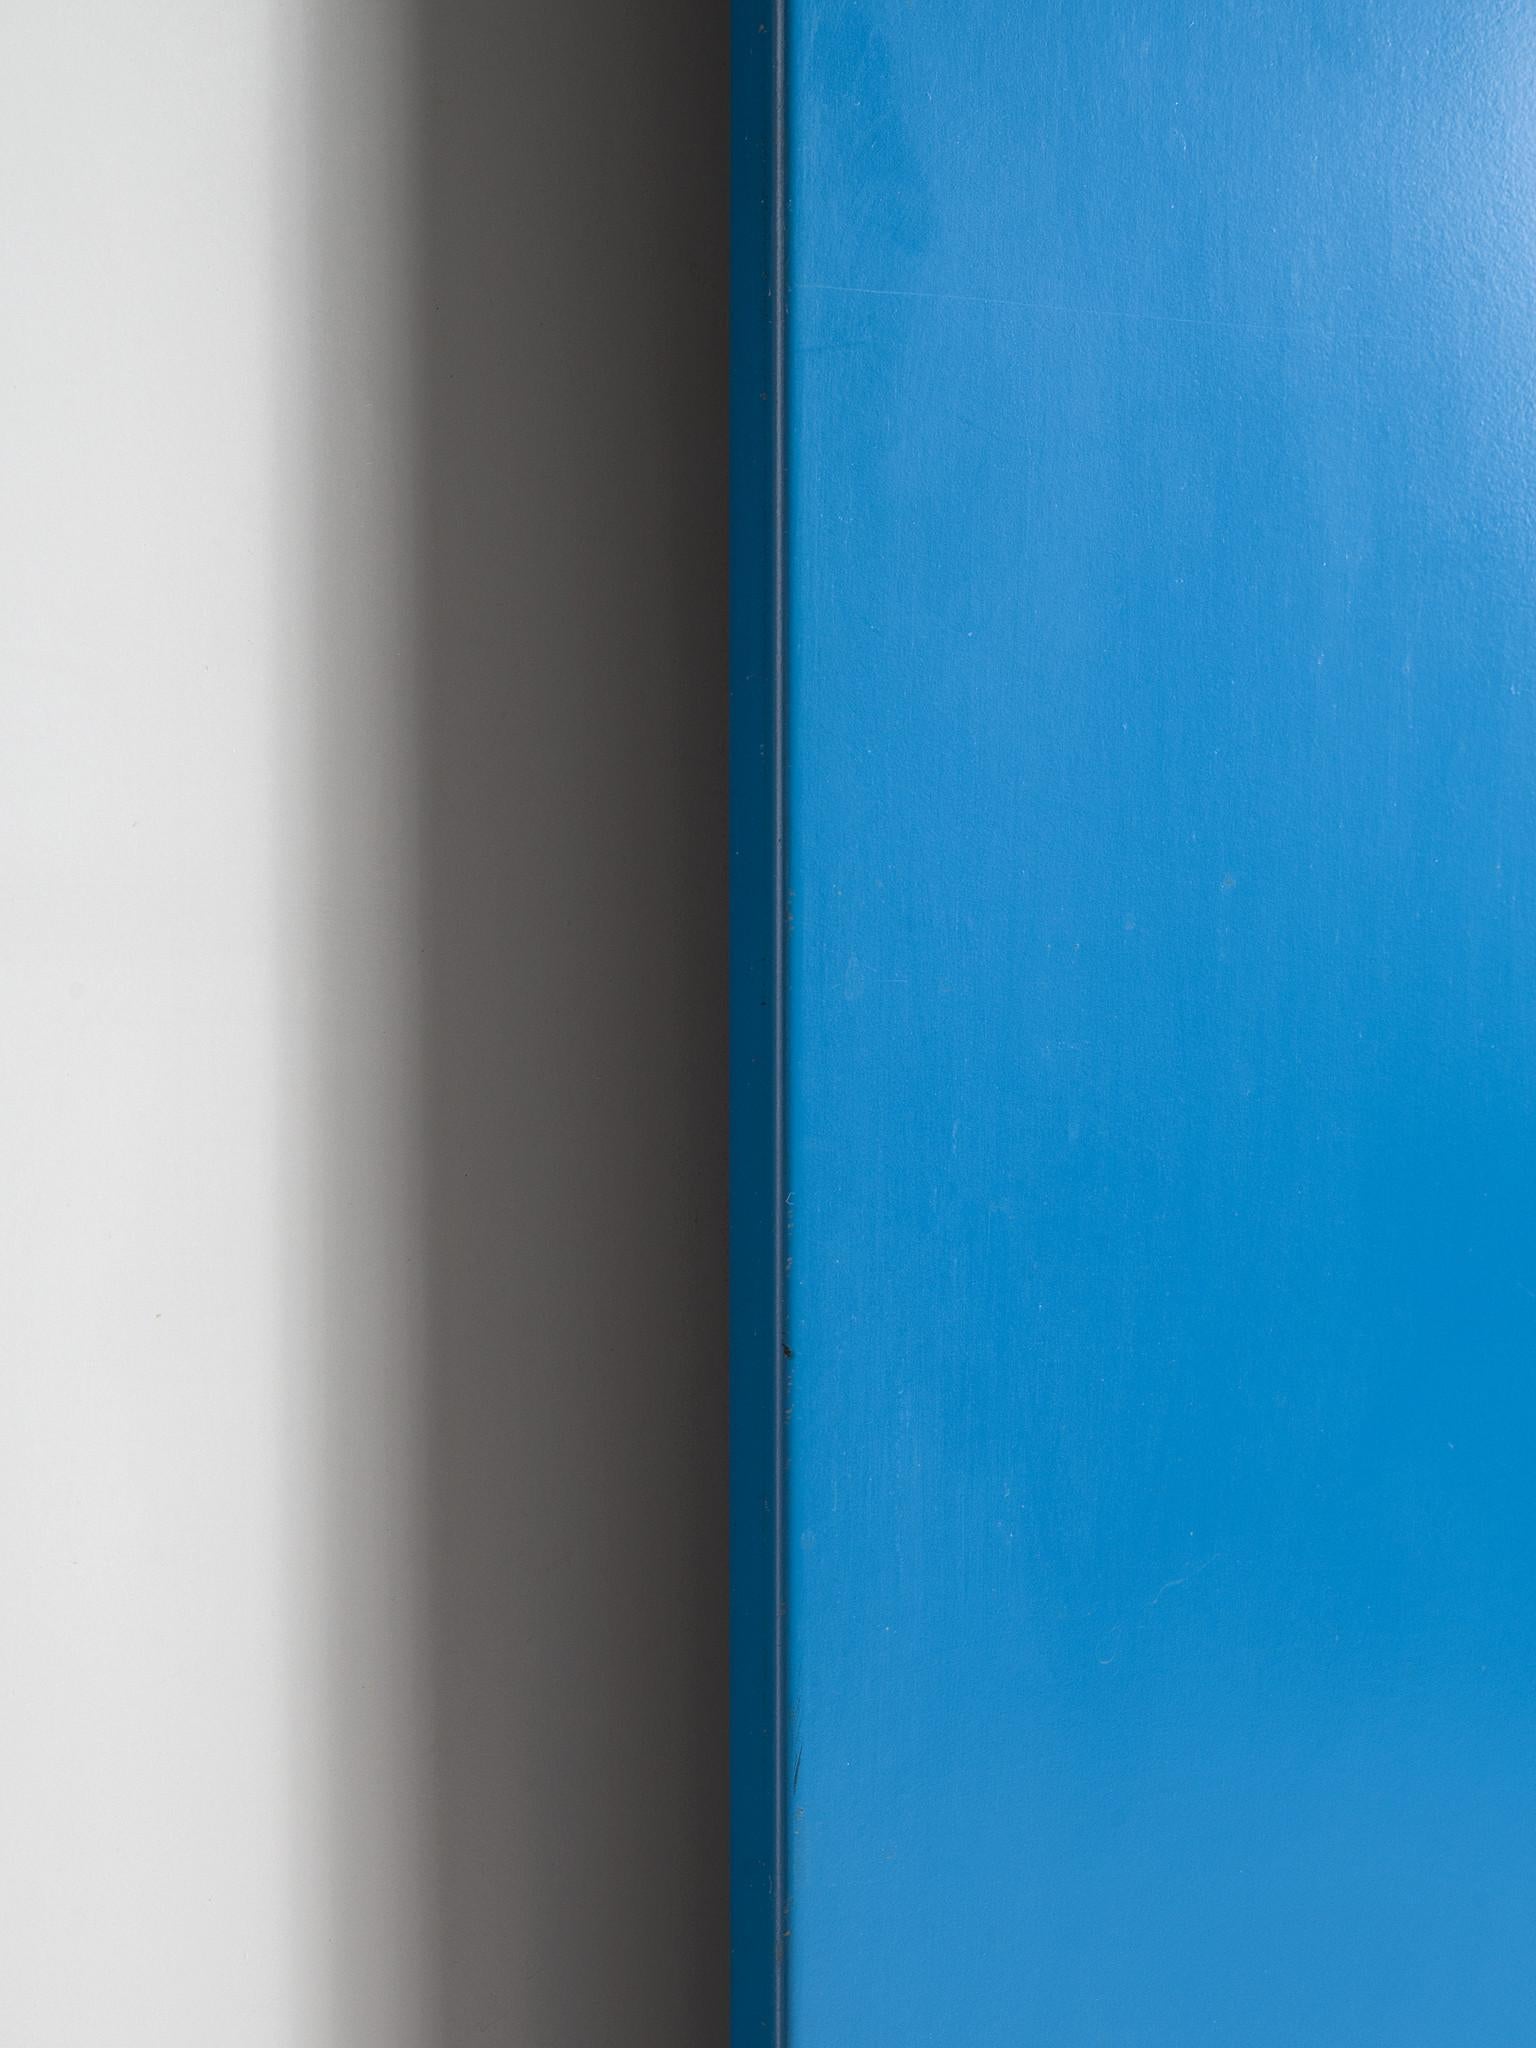 Willy Van Der Meeren Colorful Cabinet with Two Doors 1